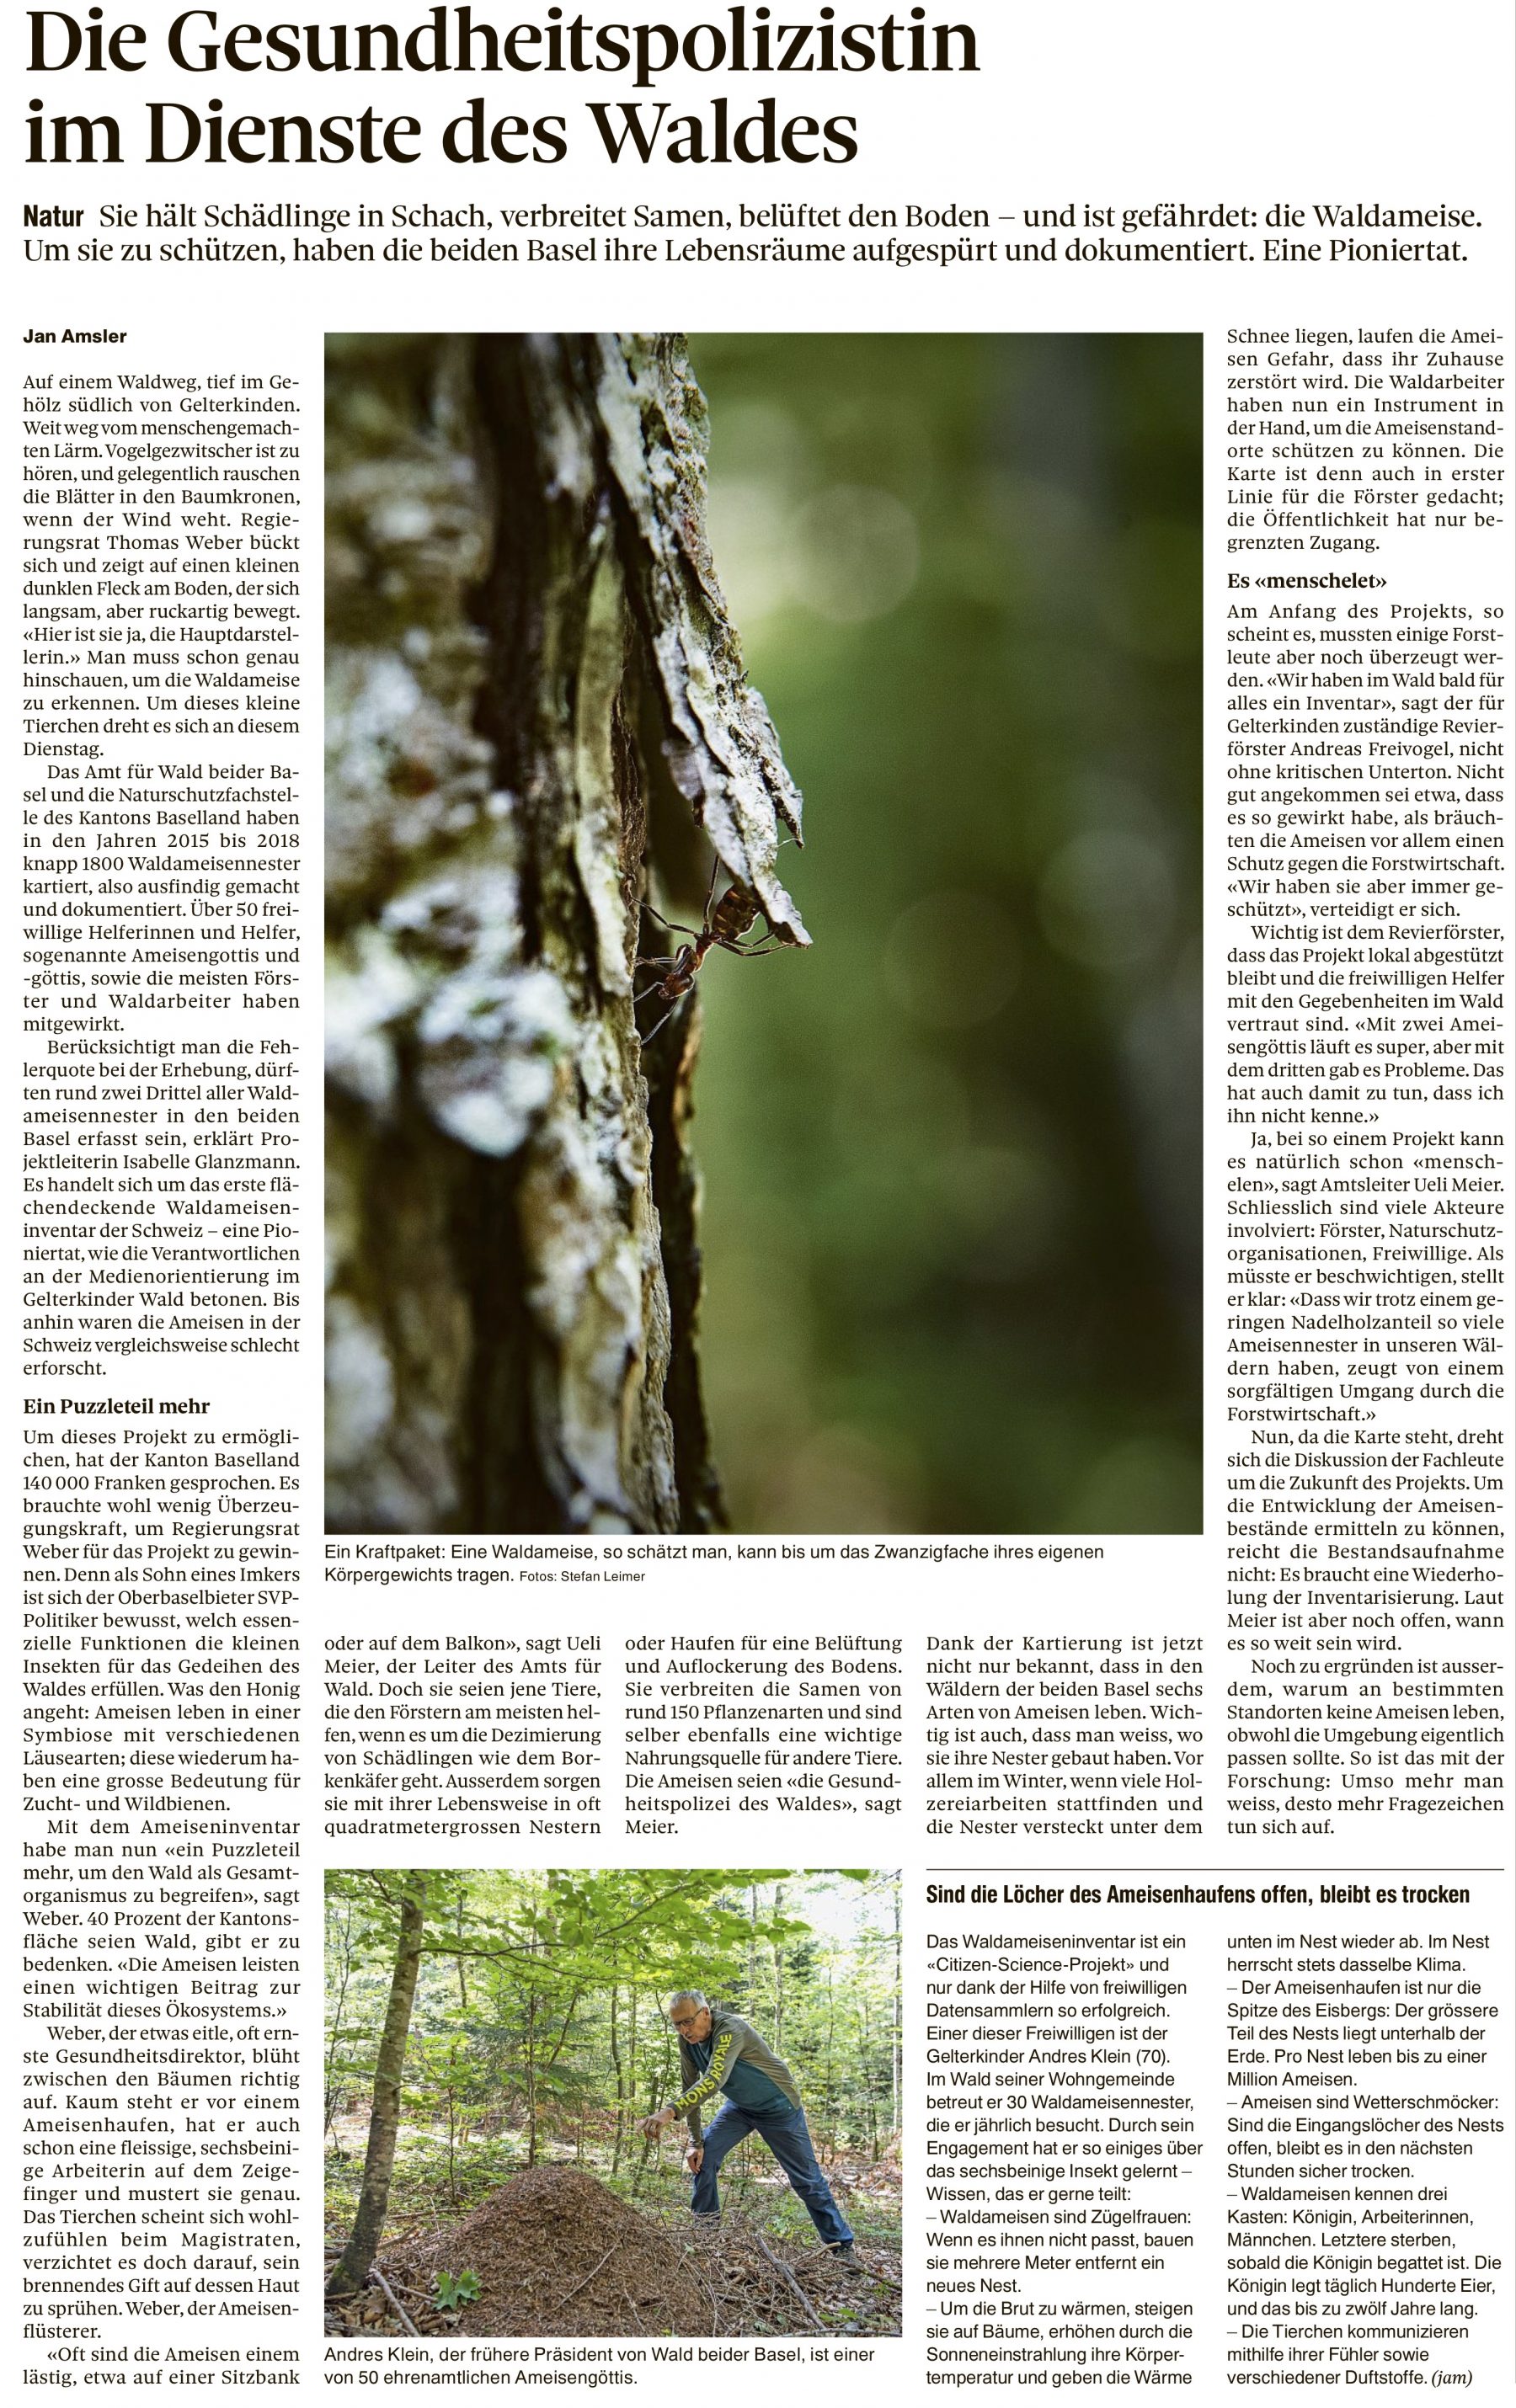 Thomas Weber, BaZ: „Die Gesundheitspolizistin im Dienste des Waldes“